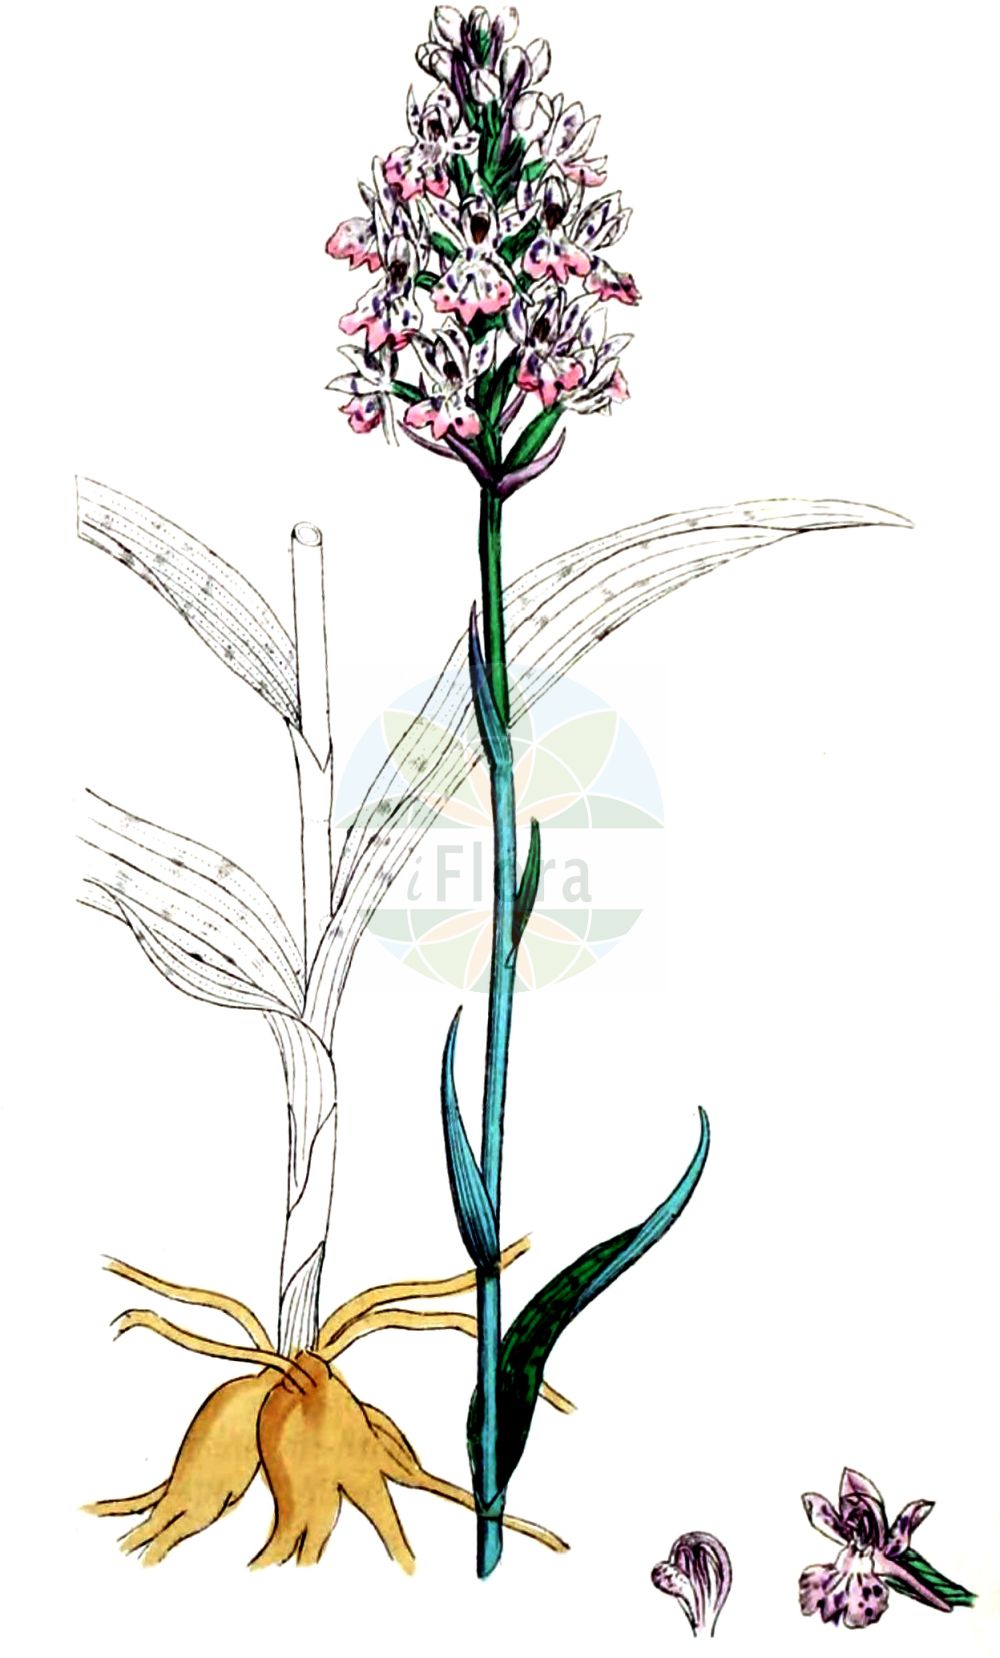 Historische Abbildung von Dactylorhiza maculata agg. (Geflecktes Knabenkraut - Heath Spotted-orchid). Das Bild zeigt Blatt, Bluete, Frucht und Same. ---- Historical Drawing of Dactylorhiza maculata agg. (Geflecktes Knabenkraut - Heath Spotted-orchid). The image is showing leaf, flower, fruit and seed.(Dactylorhiza maculata agg.,Geflecktes Knabenkraut,Heath Spotted-orchid,Geflecktes Knabenkraut,Geflecktes Knabenkraut,Gefleckte Fingerwurz,Heide-Knabenkraut,Heath Spotted-orchid,Moorland Spotted Orchid,Dactylorhiza,Knabenkraut,Keyflower,Orchidaceae,Knabenkrautgewächse,Orchid family,Blatt,Bluete,Frucht,Same,leaf,flower,fruit,seed,Sowerby (1790-1813))